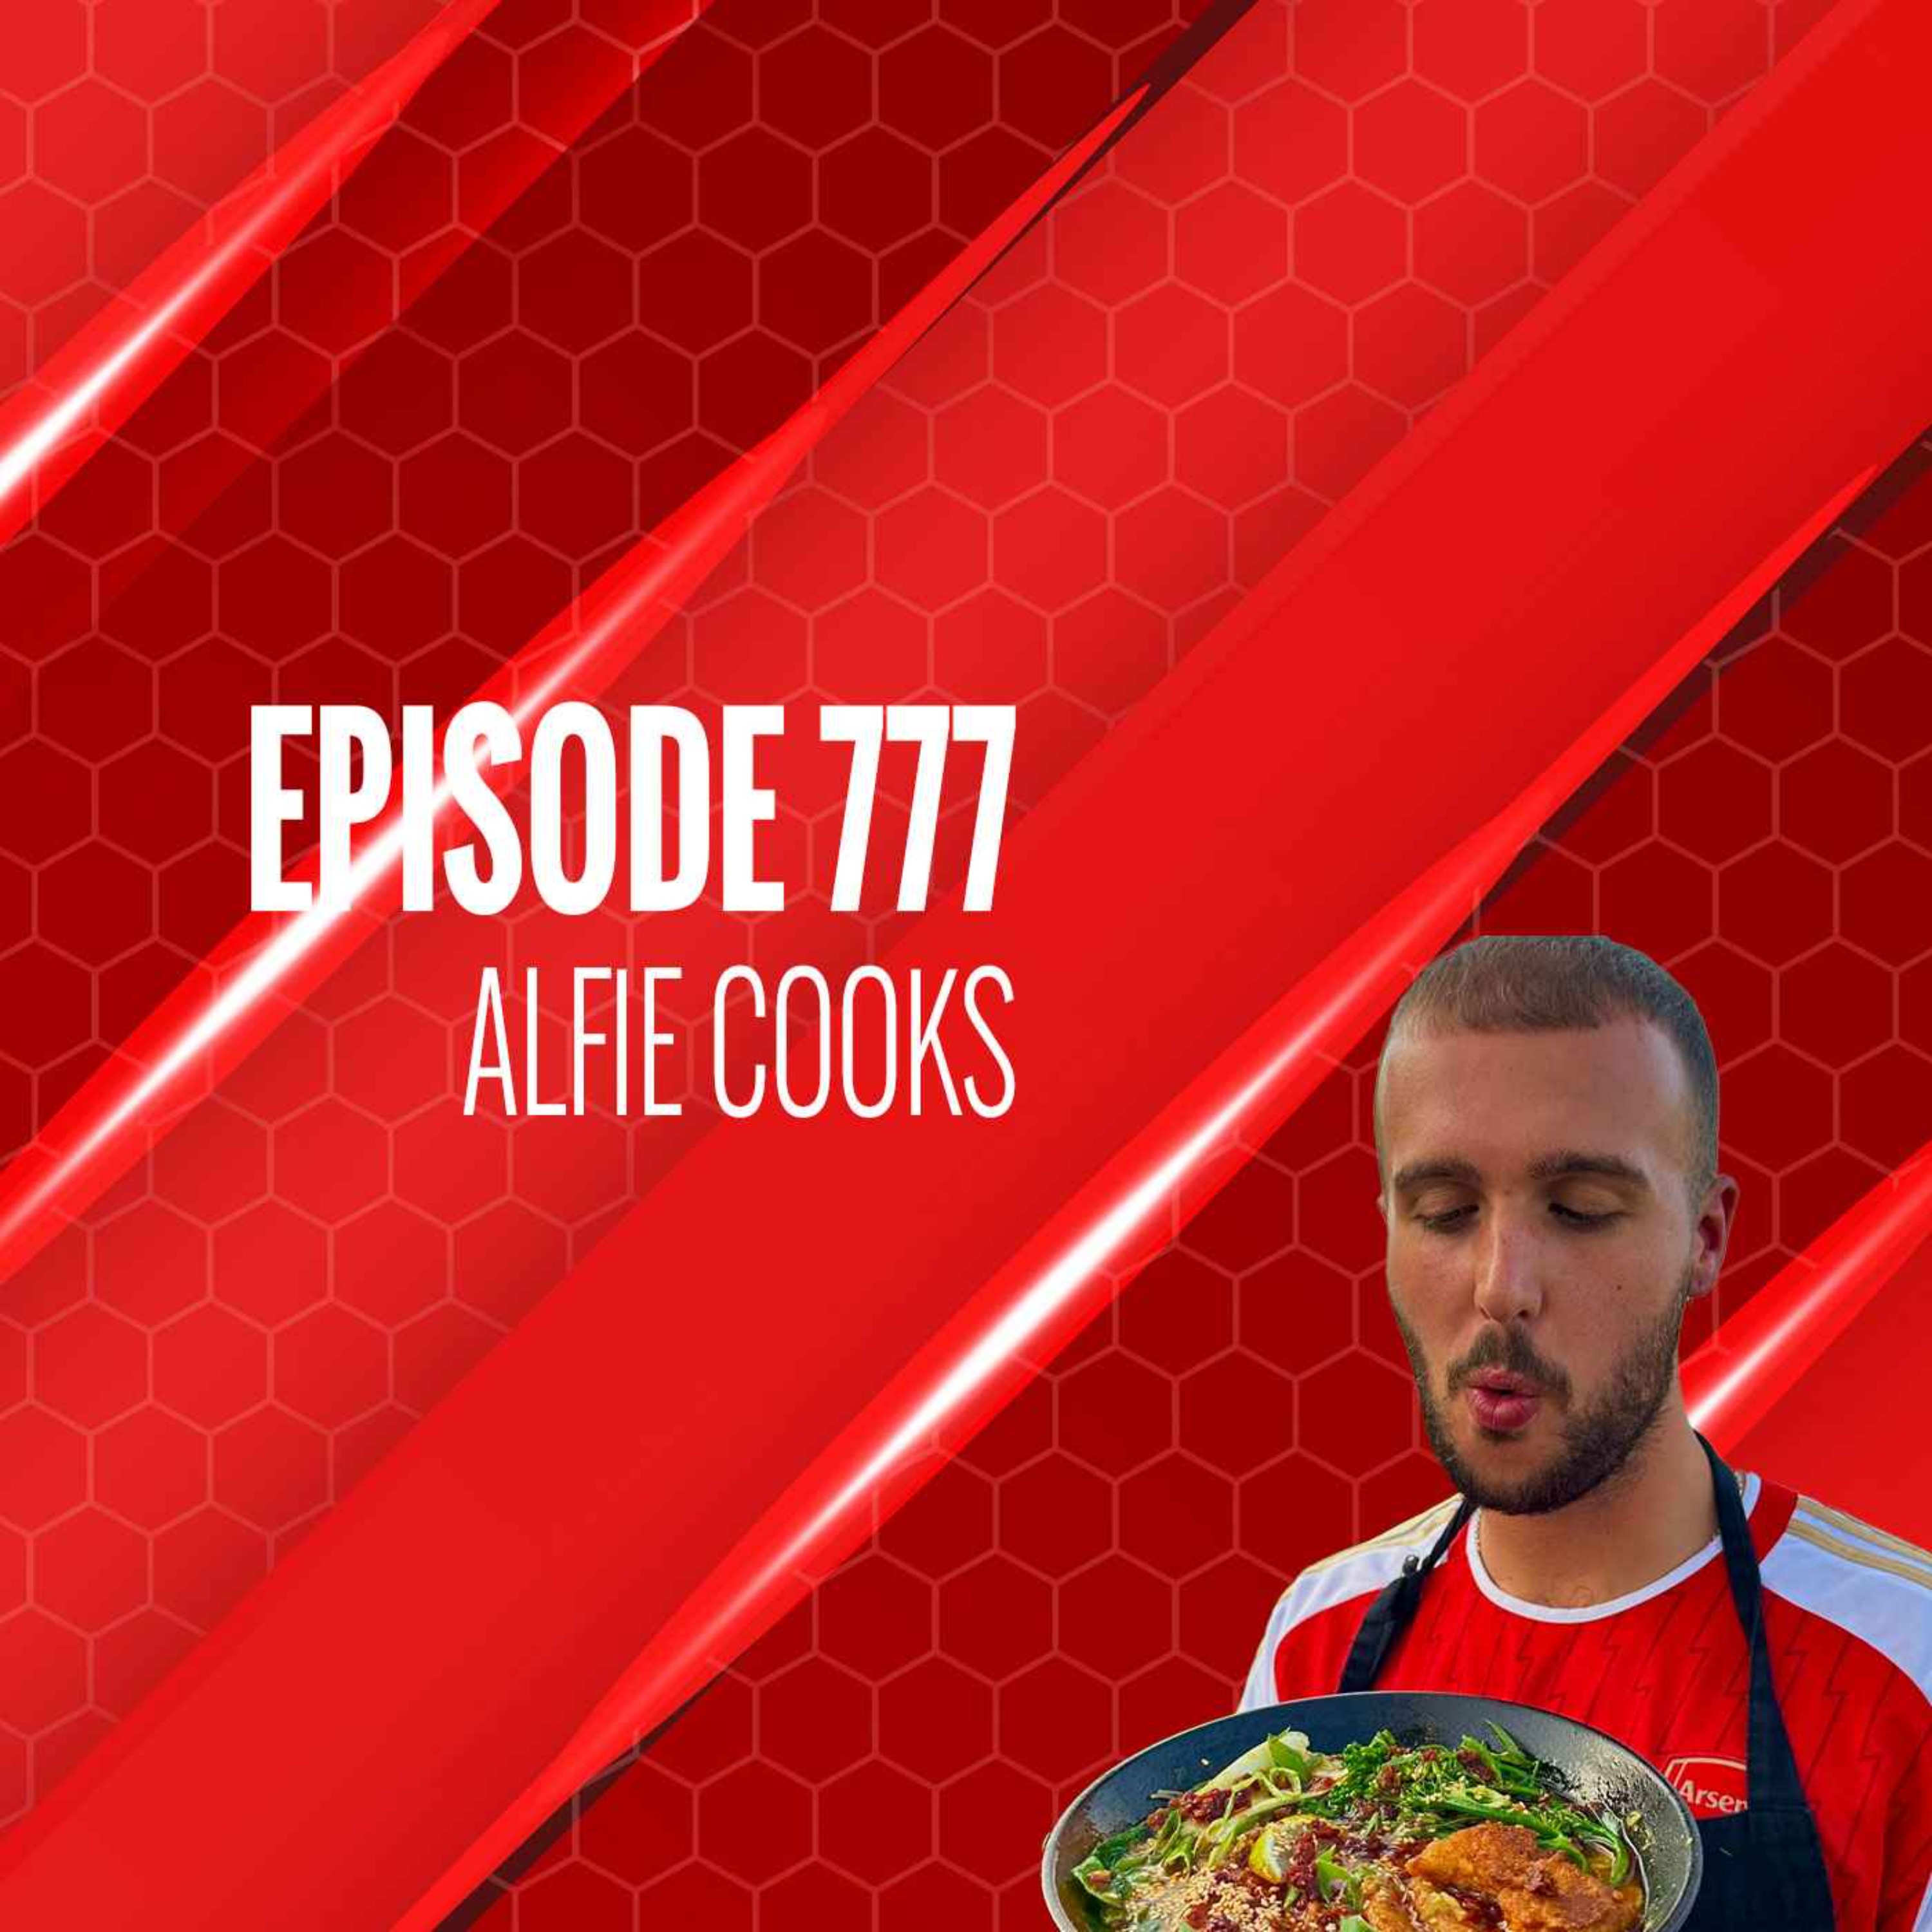 Episode 777 - Alfie Cooks